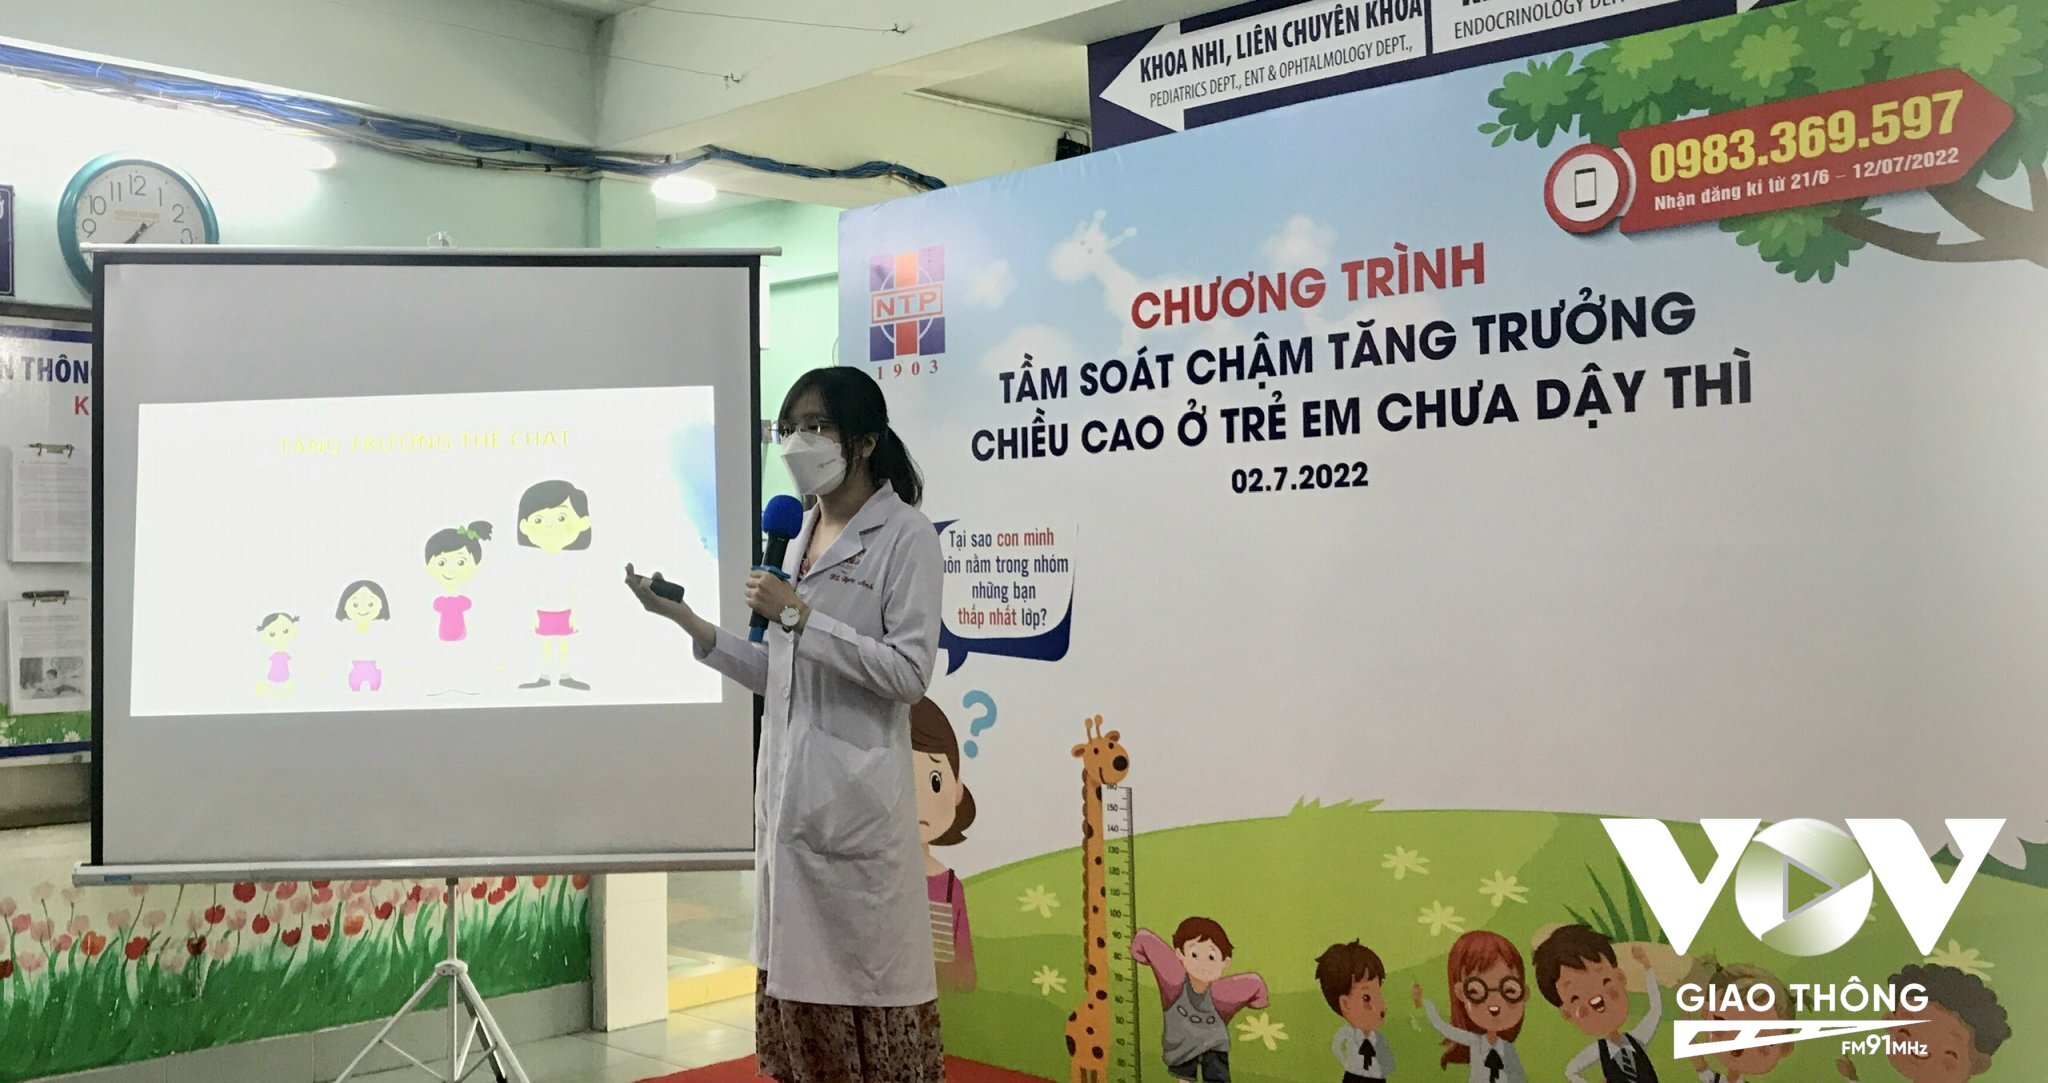 Bác sĩ Trần Thị Ngọc Anh giải thích các giai đoạn cần can thiệp với trẻ thiếu hooc môn tăng trưởng (GH) cho phụ huynh.